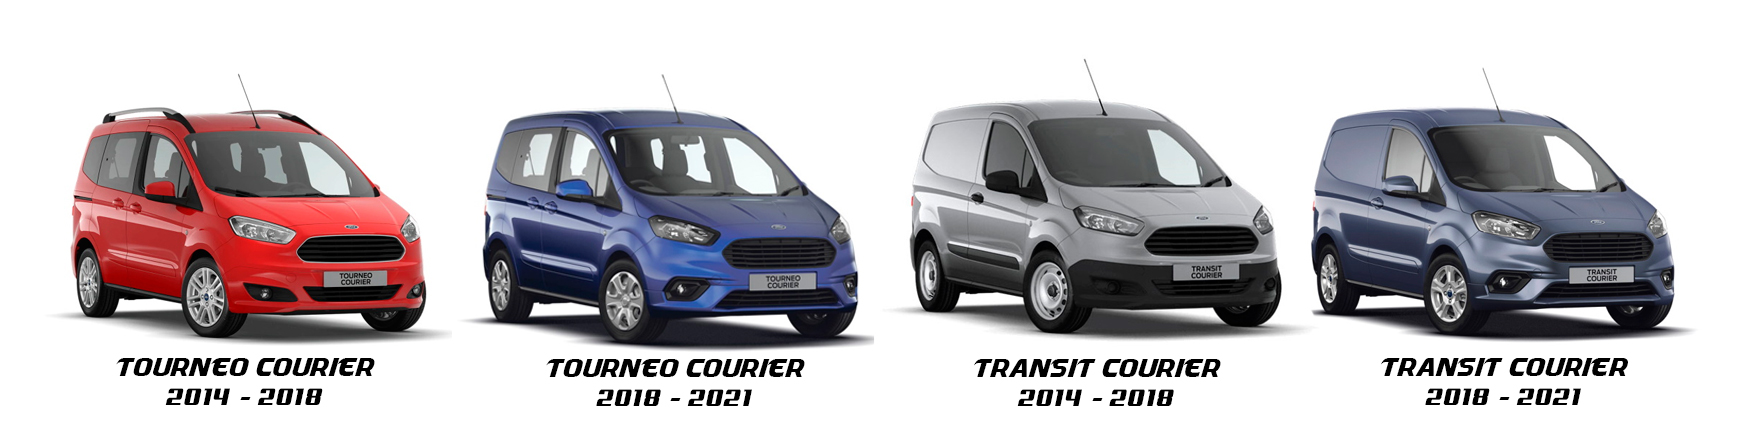 Ford Transit Courier y Tourneo Courier 2014 en adelante - Veramauto.es